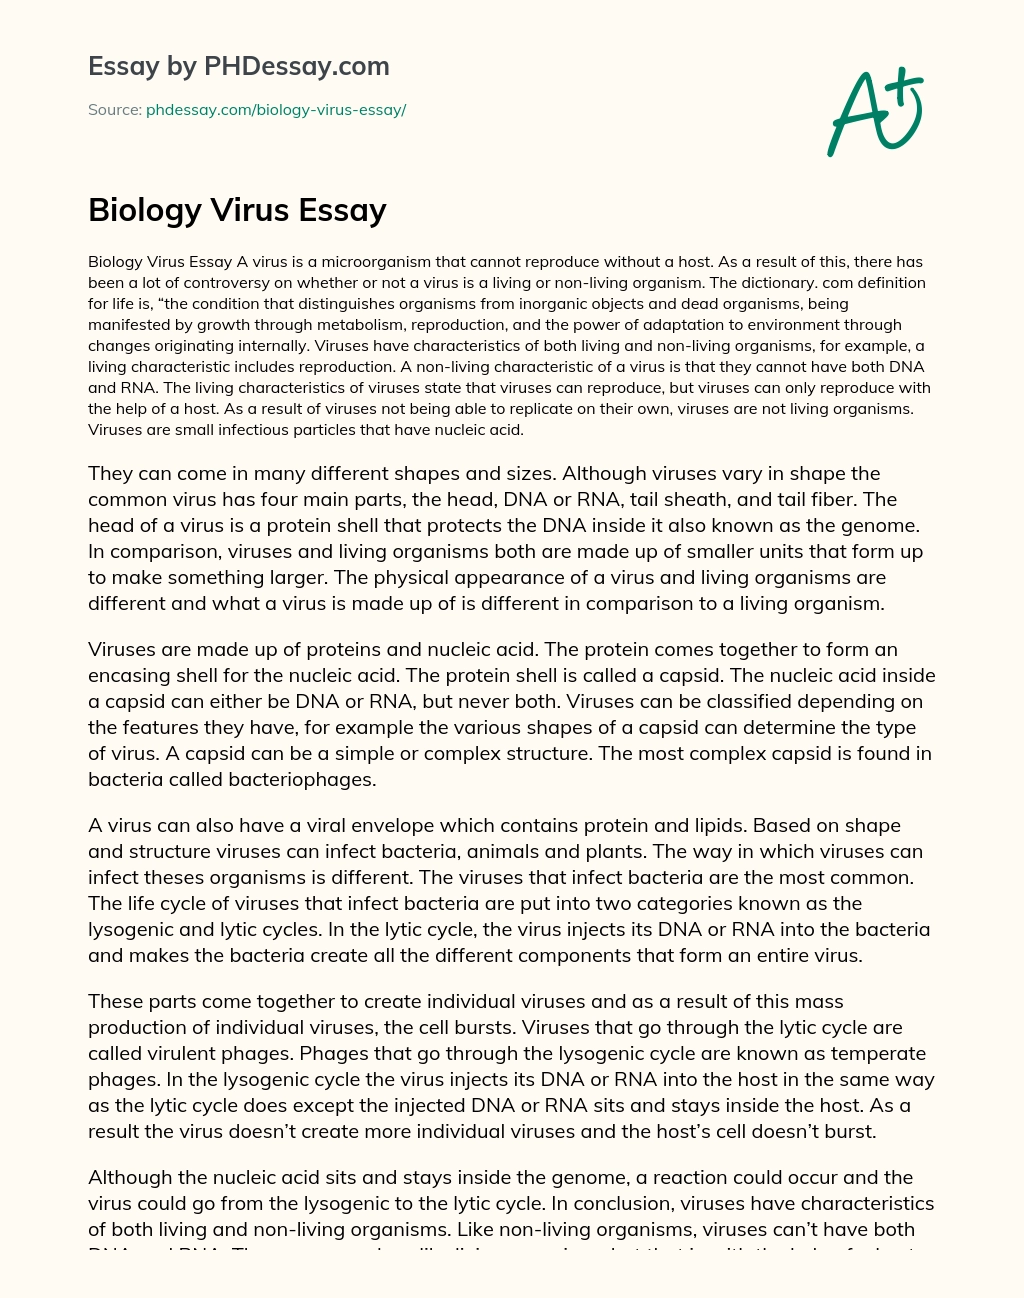 Biology Virus Essay essay